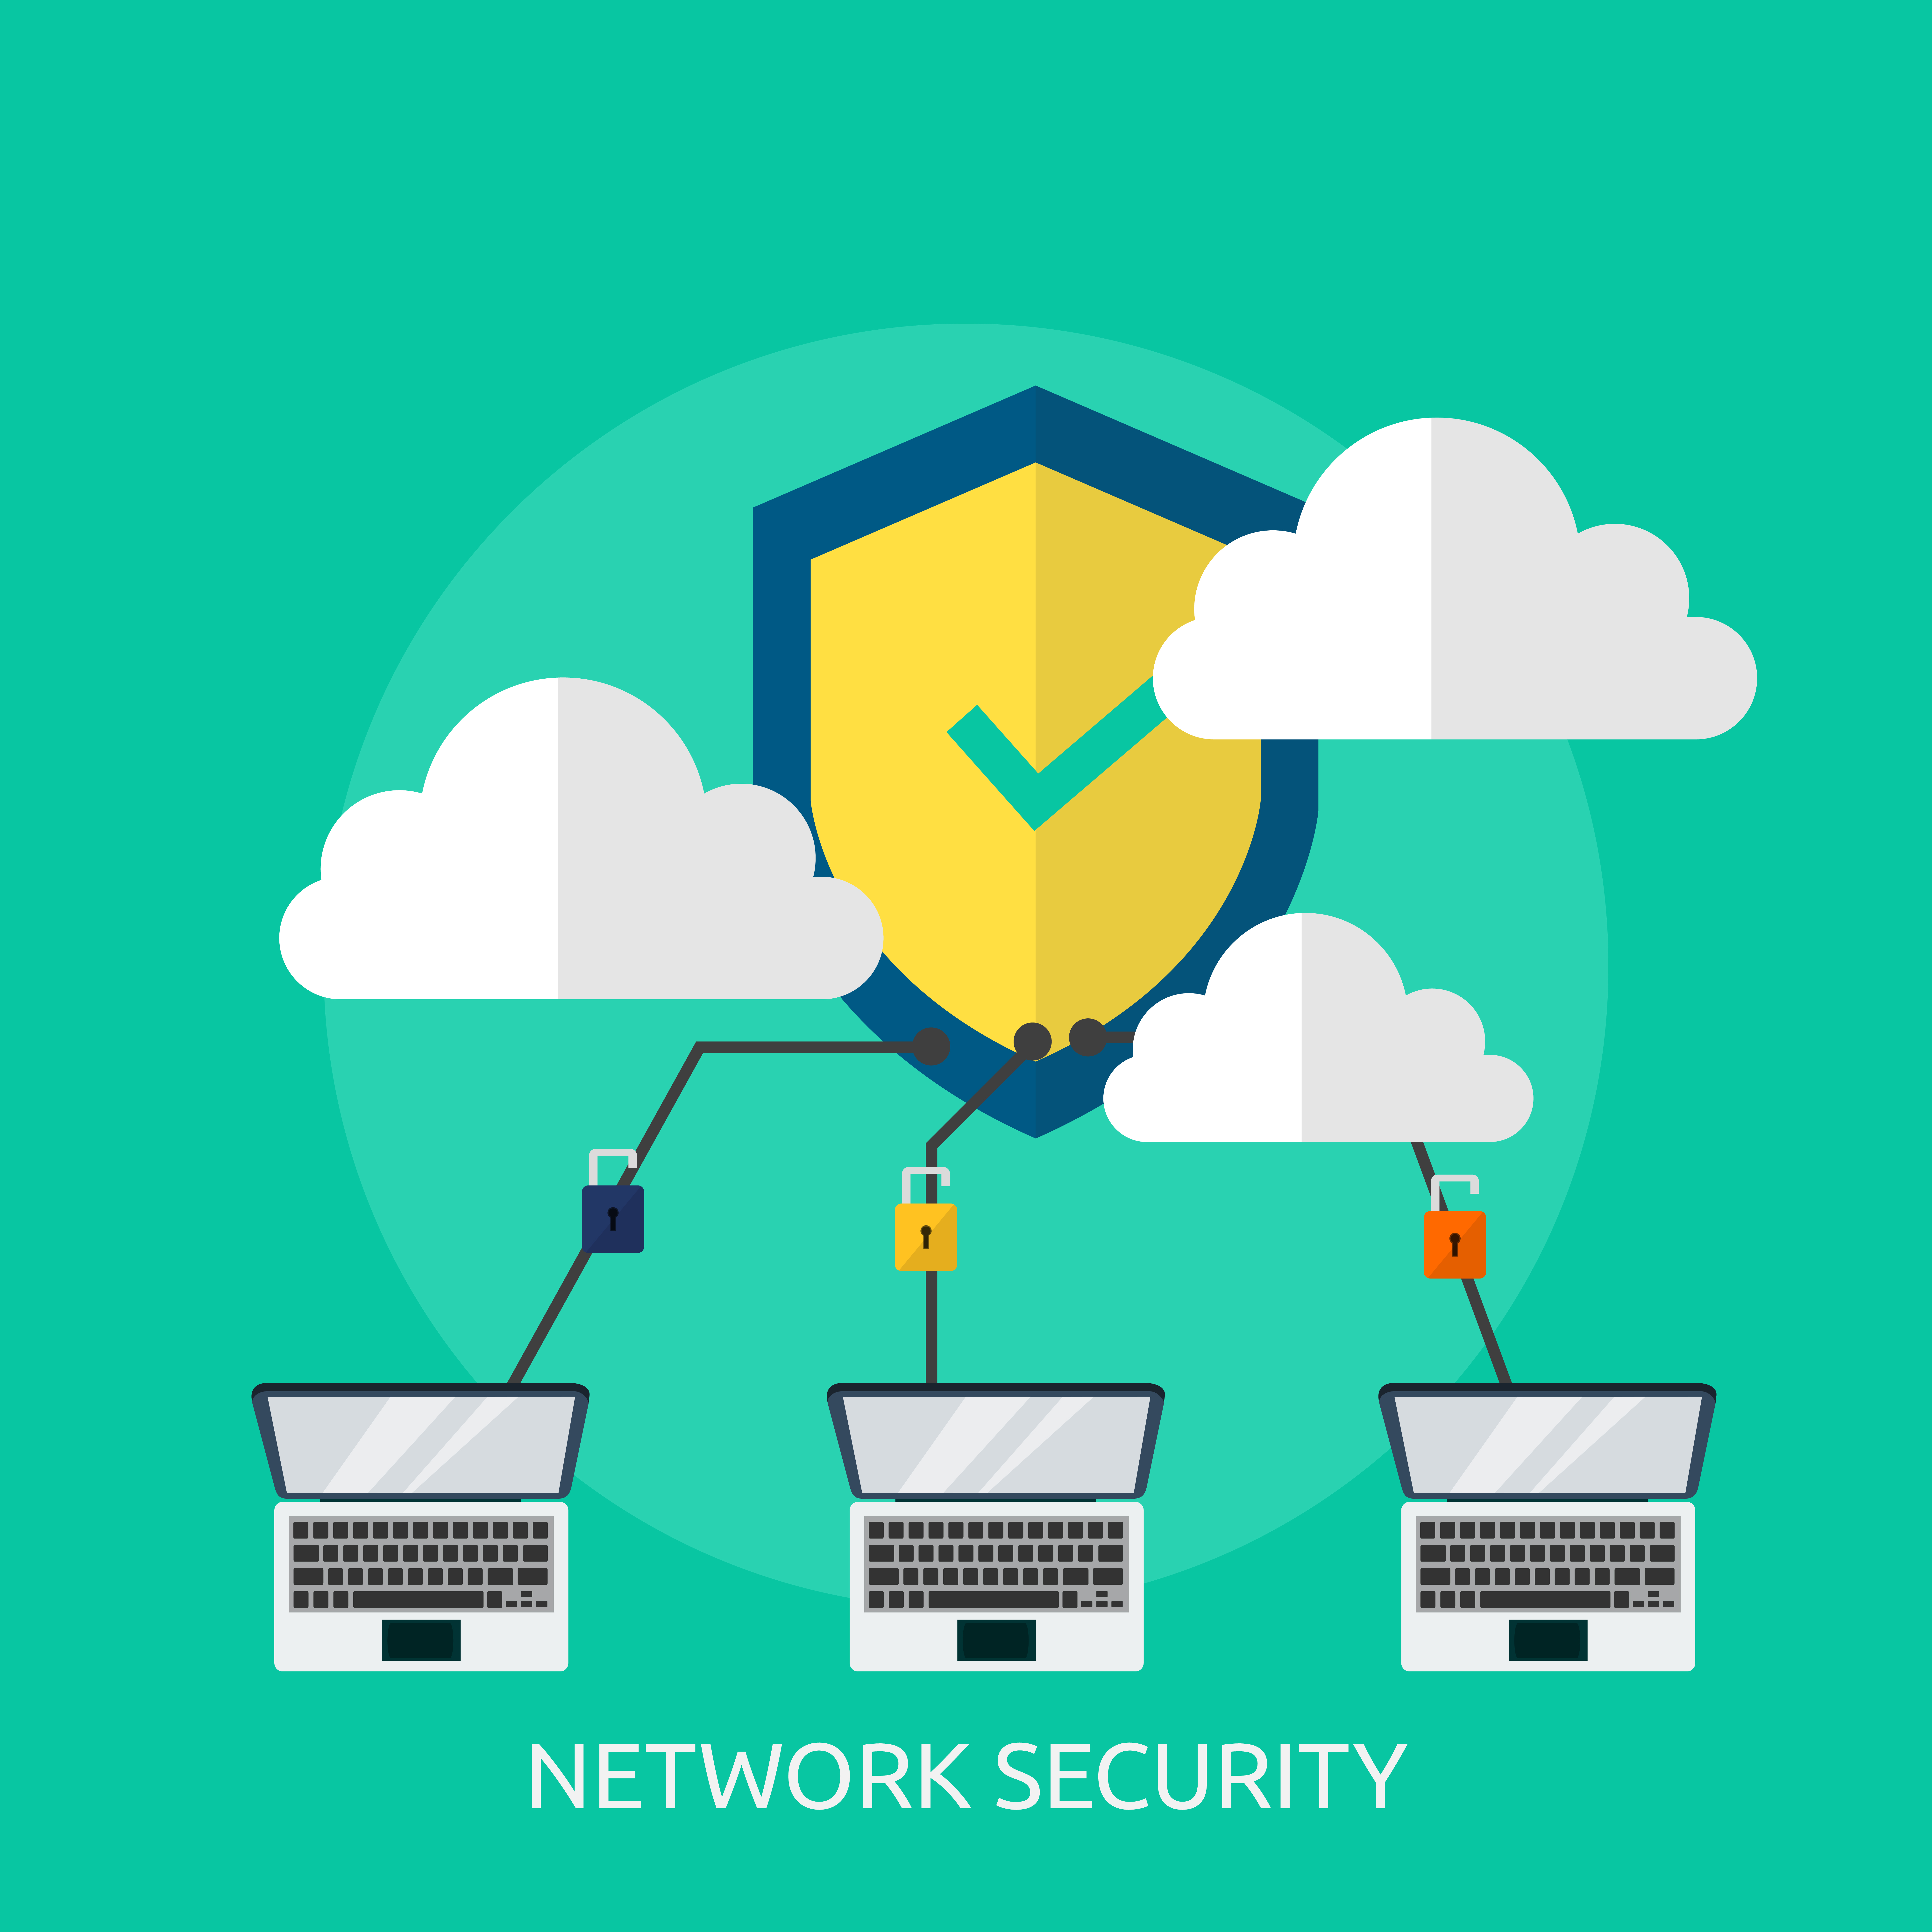 Network security professionals. Виртуальная частная сеть. Сетевая безопасность. Network Security. VPN фон.